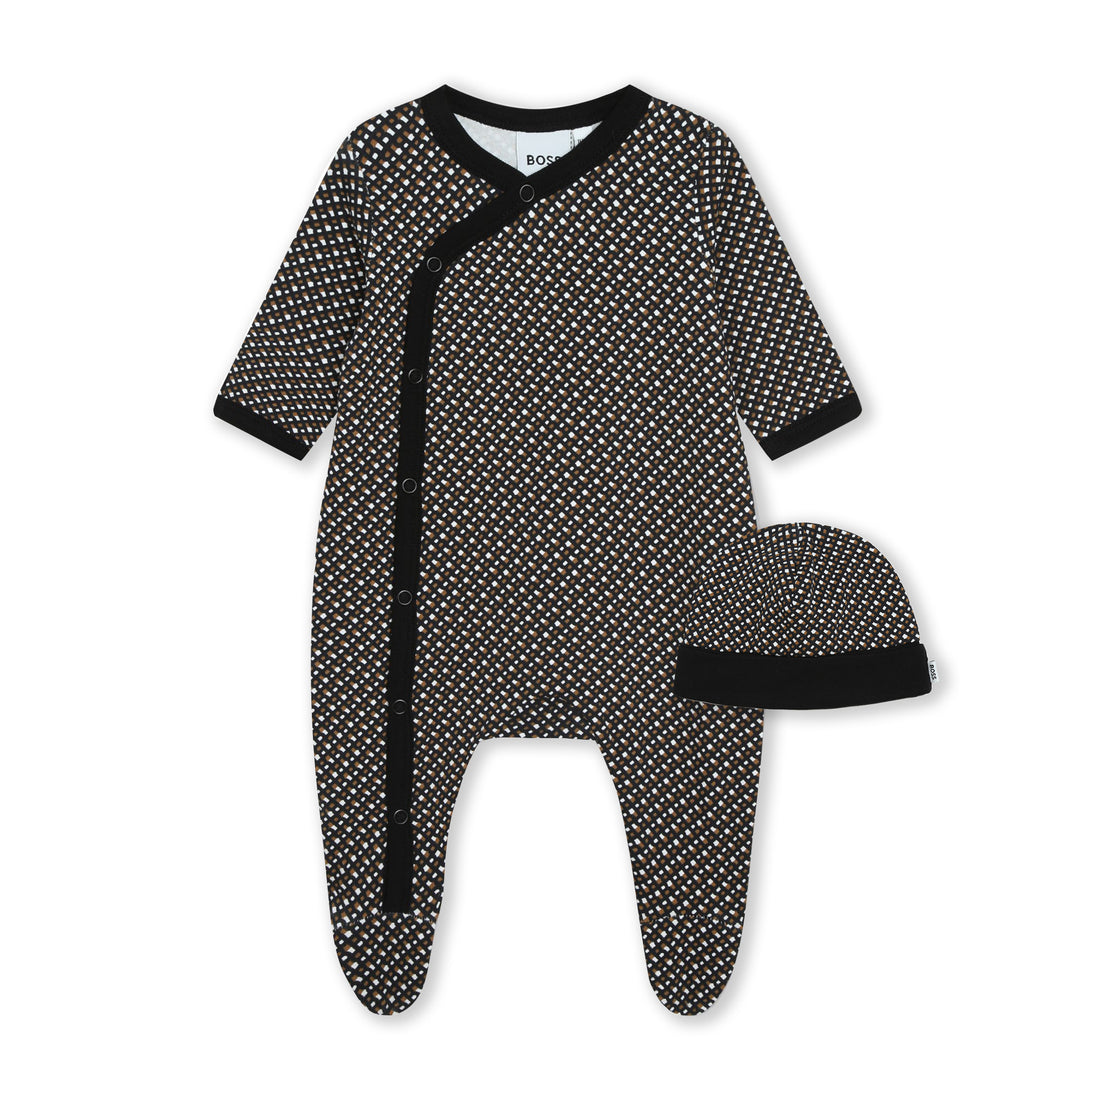 Hugo Boss Pyjamas + Pull On Hat Set Style: J98438